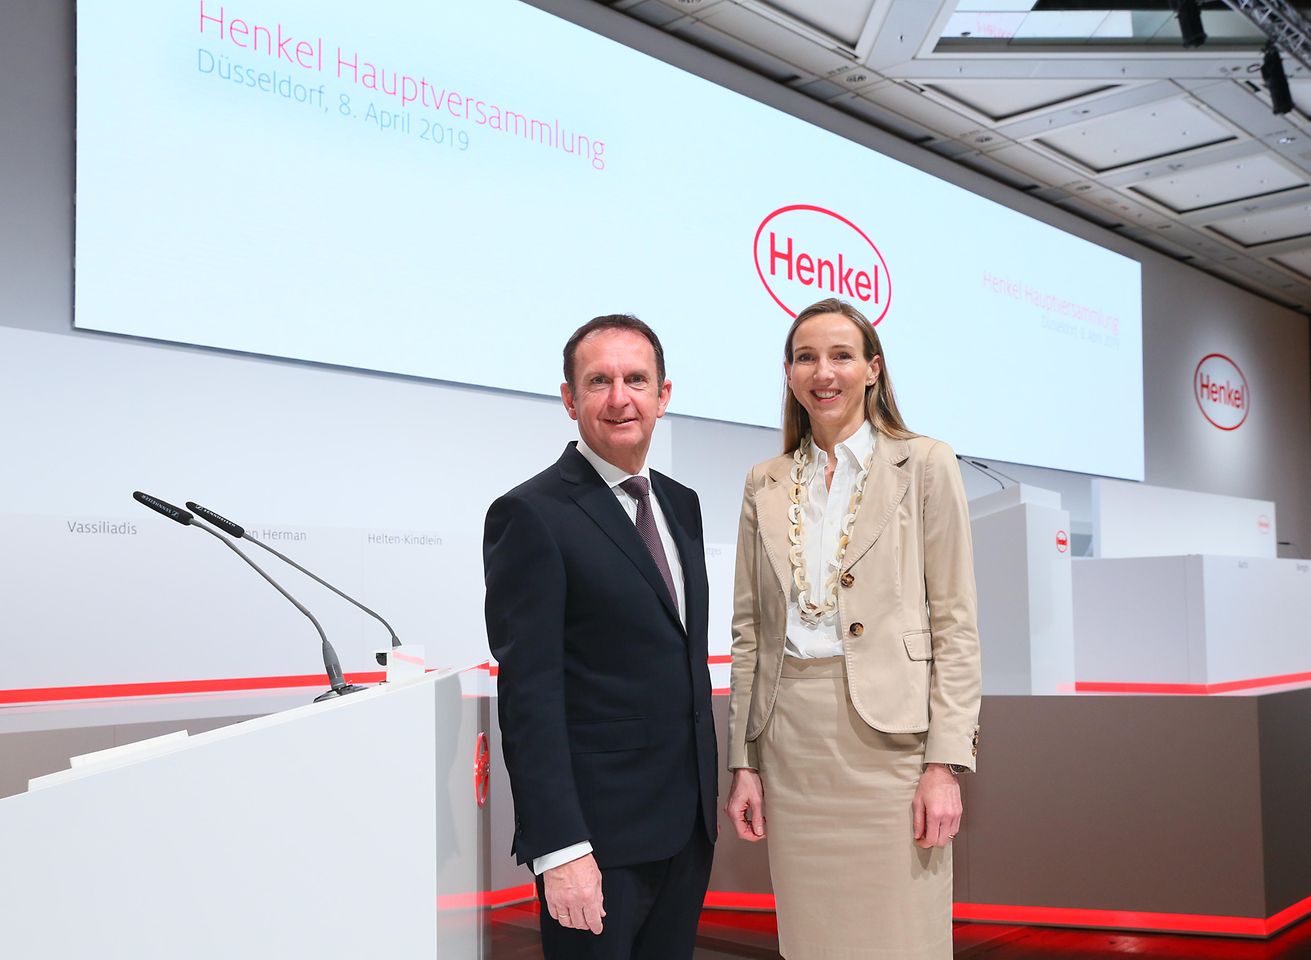 

Hans Van Bylen, Vorstandsvorsitzender von Henkel, und Dr. Simone Bagel-Trah, Vorsitzende des Aufsichtsrats und Gesellschafterausschusses